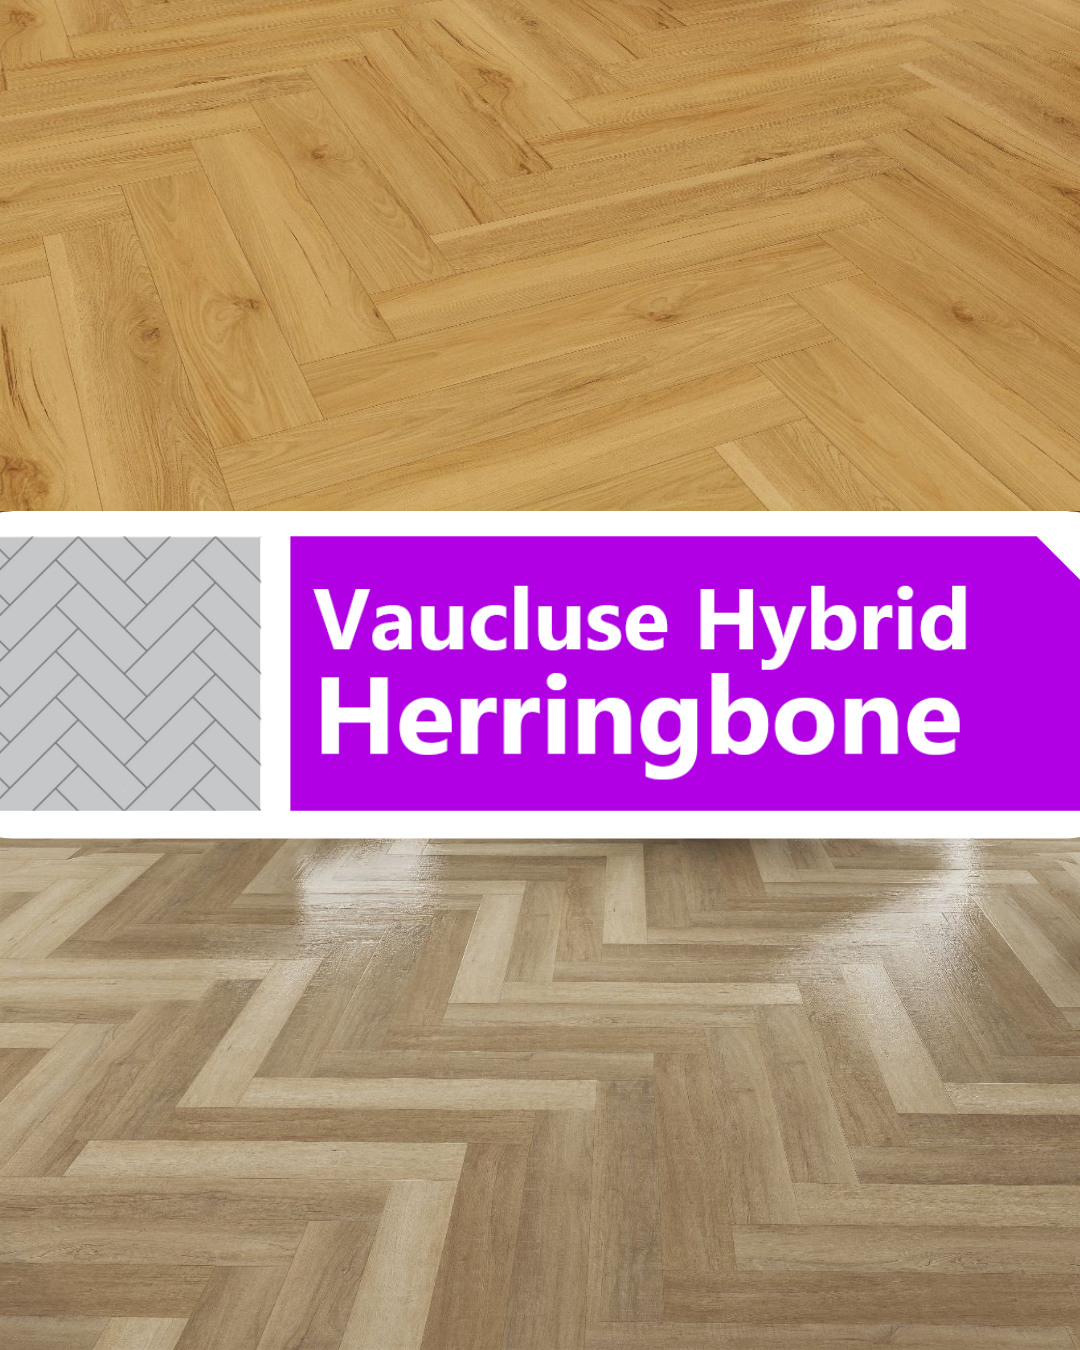 Vaucluse Hybrid Herringbone